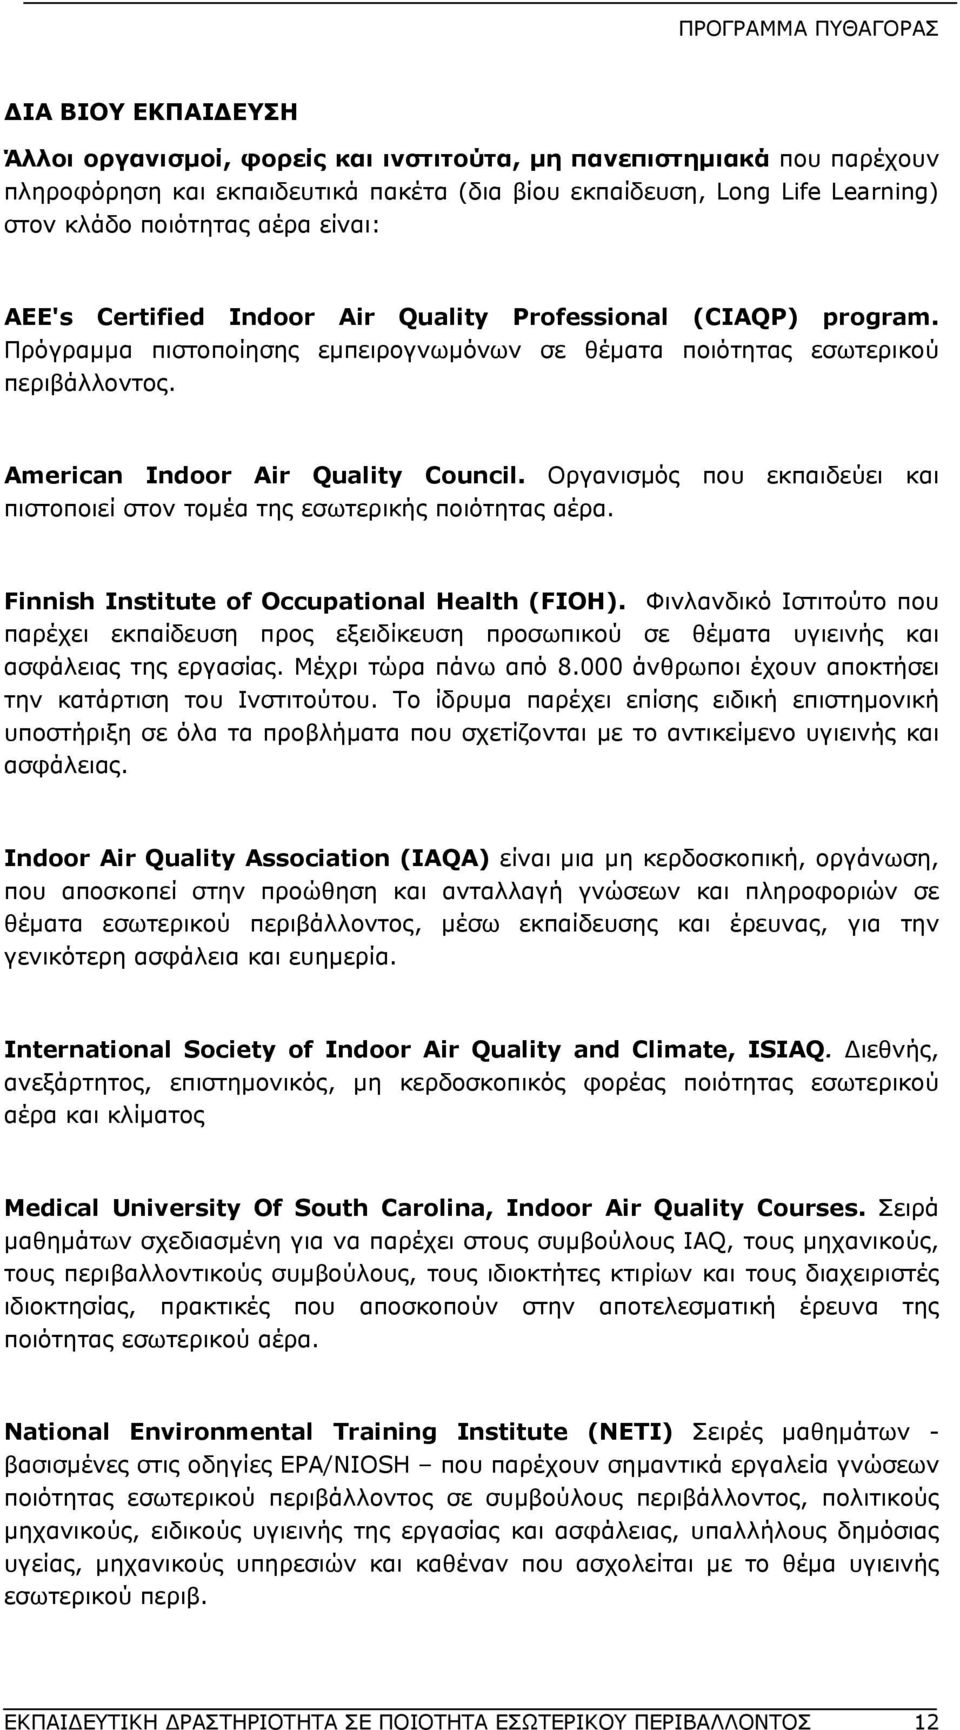 Οργανισμός που εκπαιδεύει και πιστοποιεί στον τομέα της εσωτερικής ποιότητας αέρα. Finnish Institute of Occupational Health (FIOH).